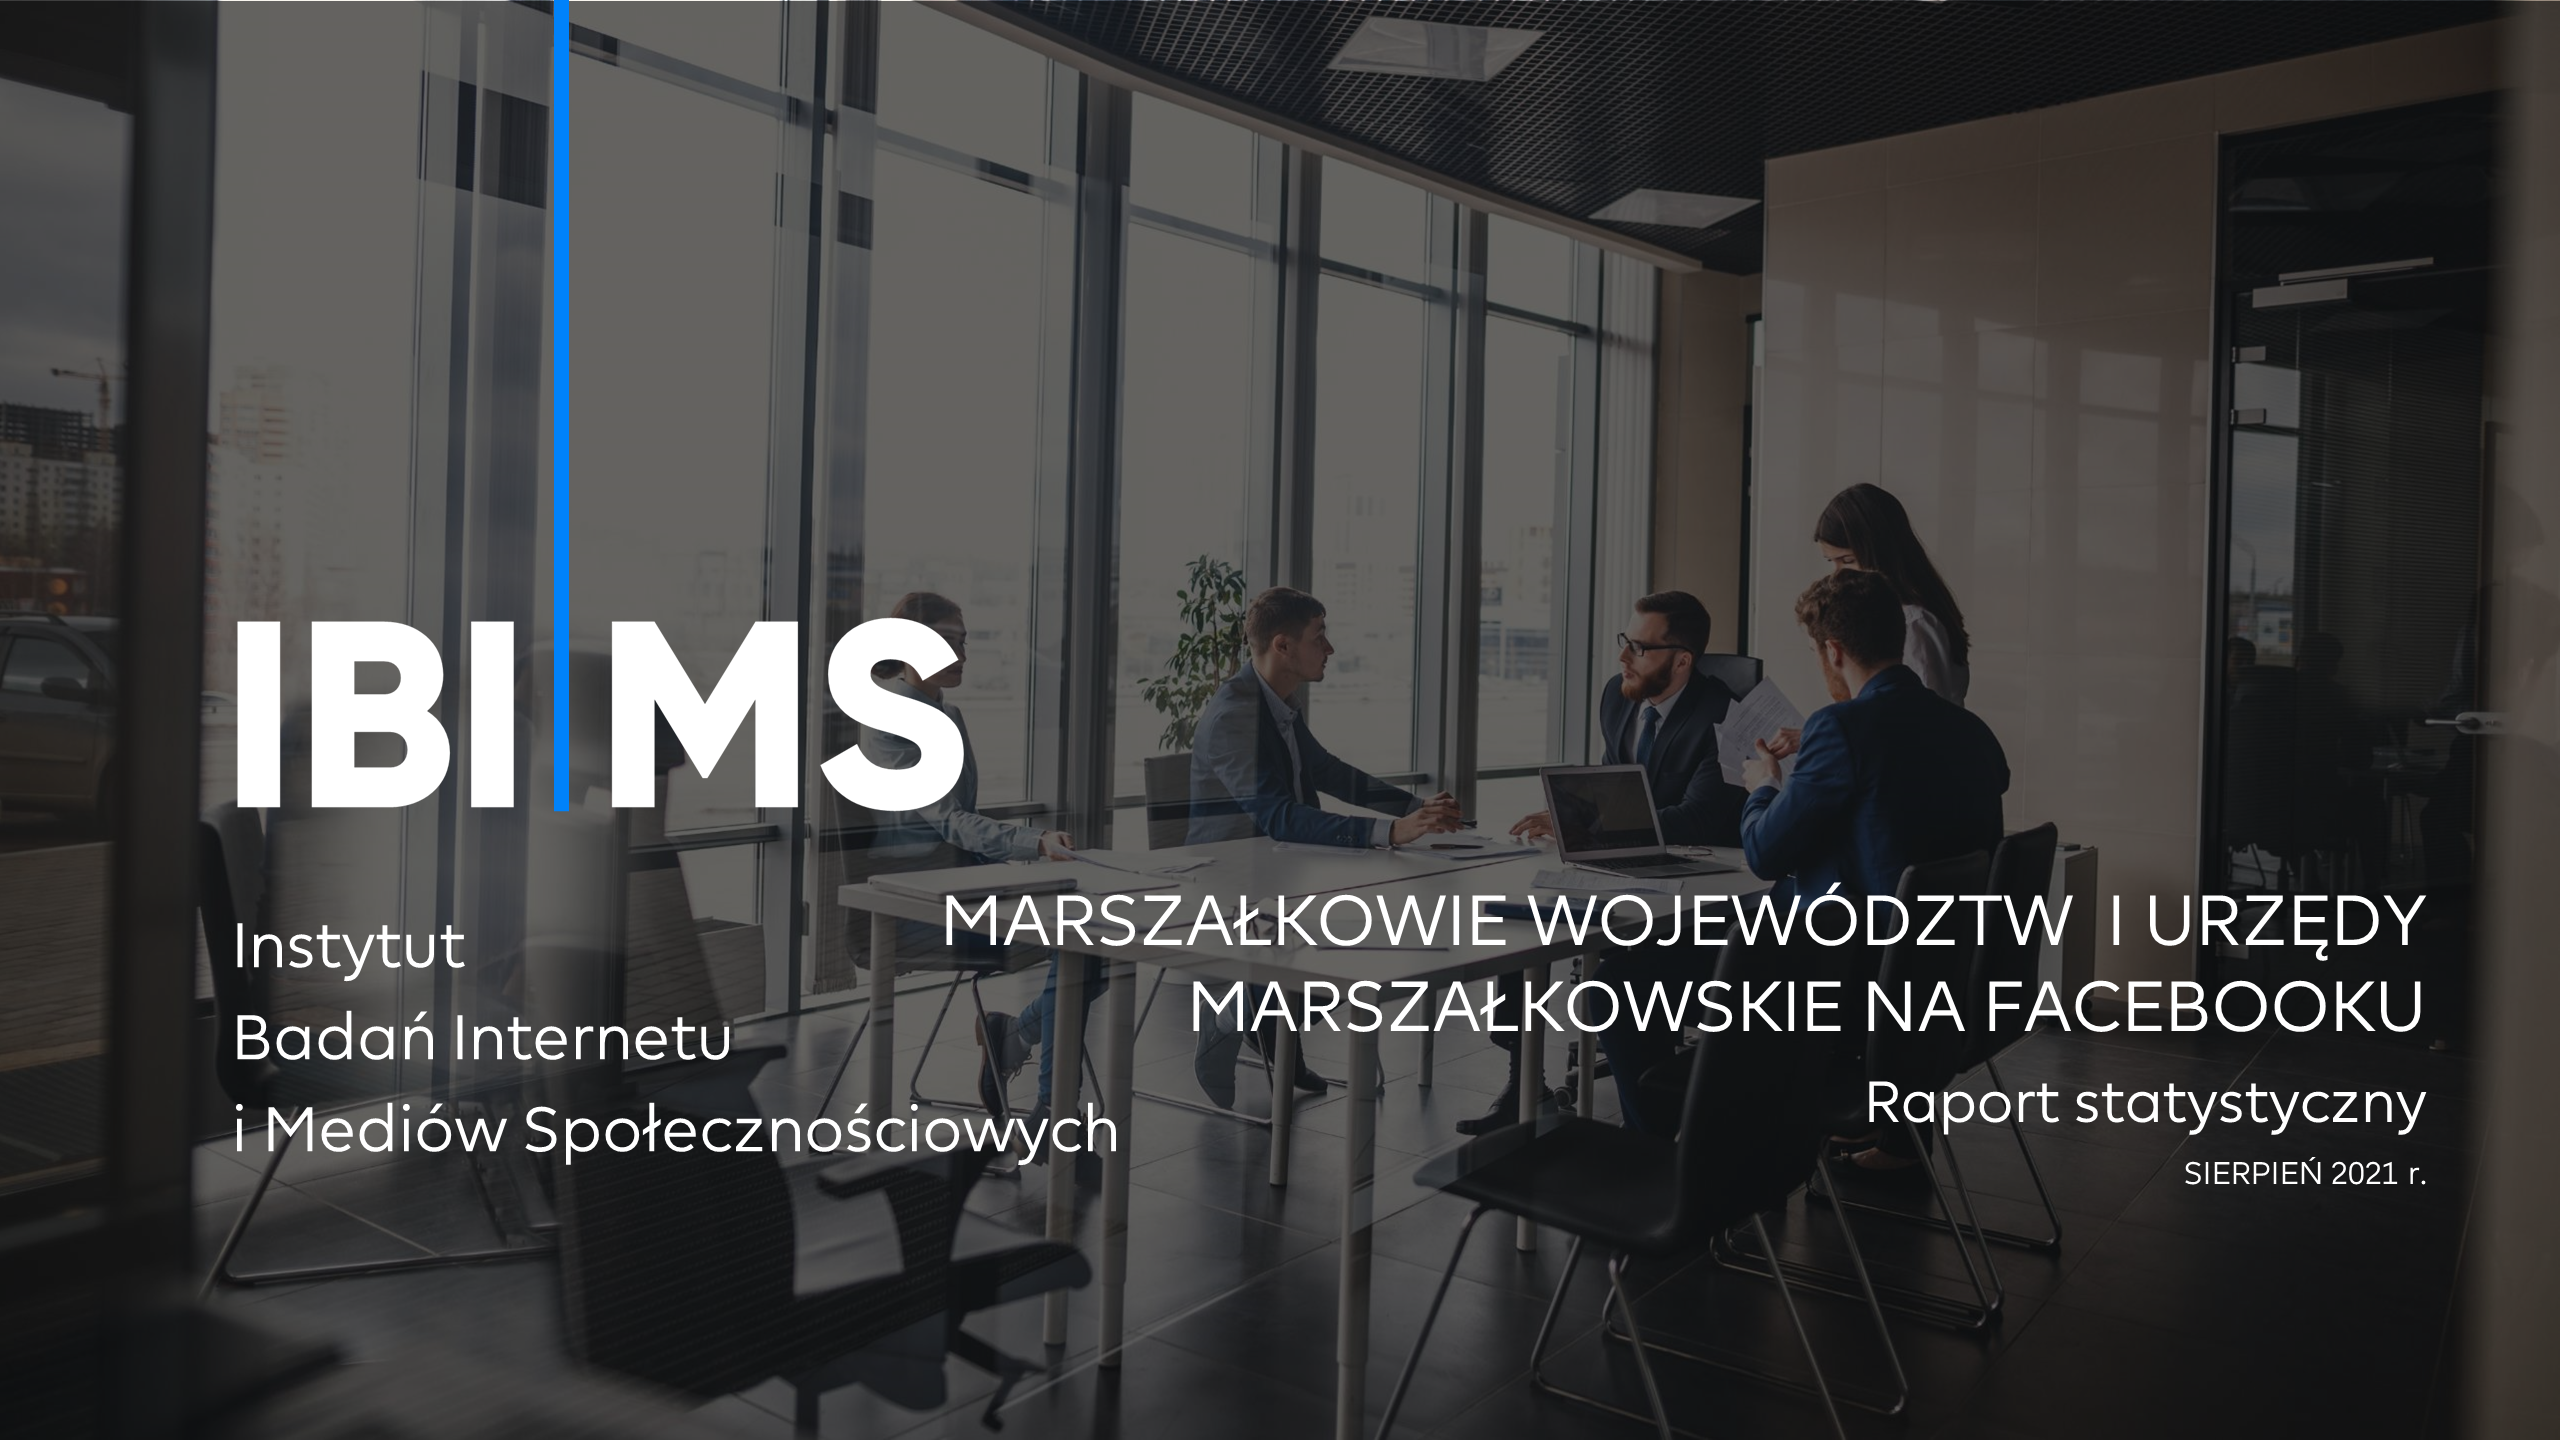 Marszałkowie województw i urzędy marszałkowskie na Facebooku – Raport IBIMS sierpień 2021